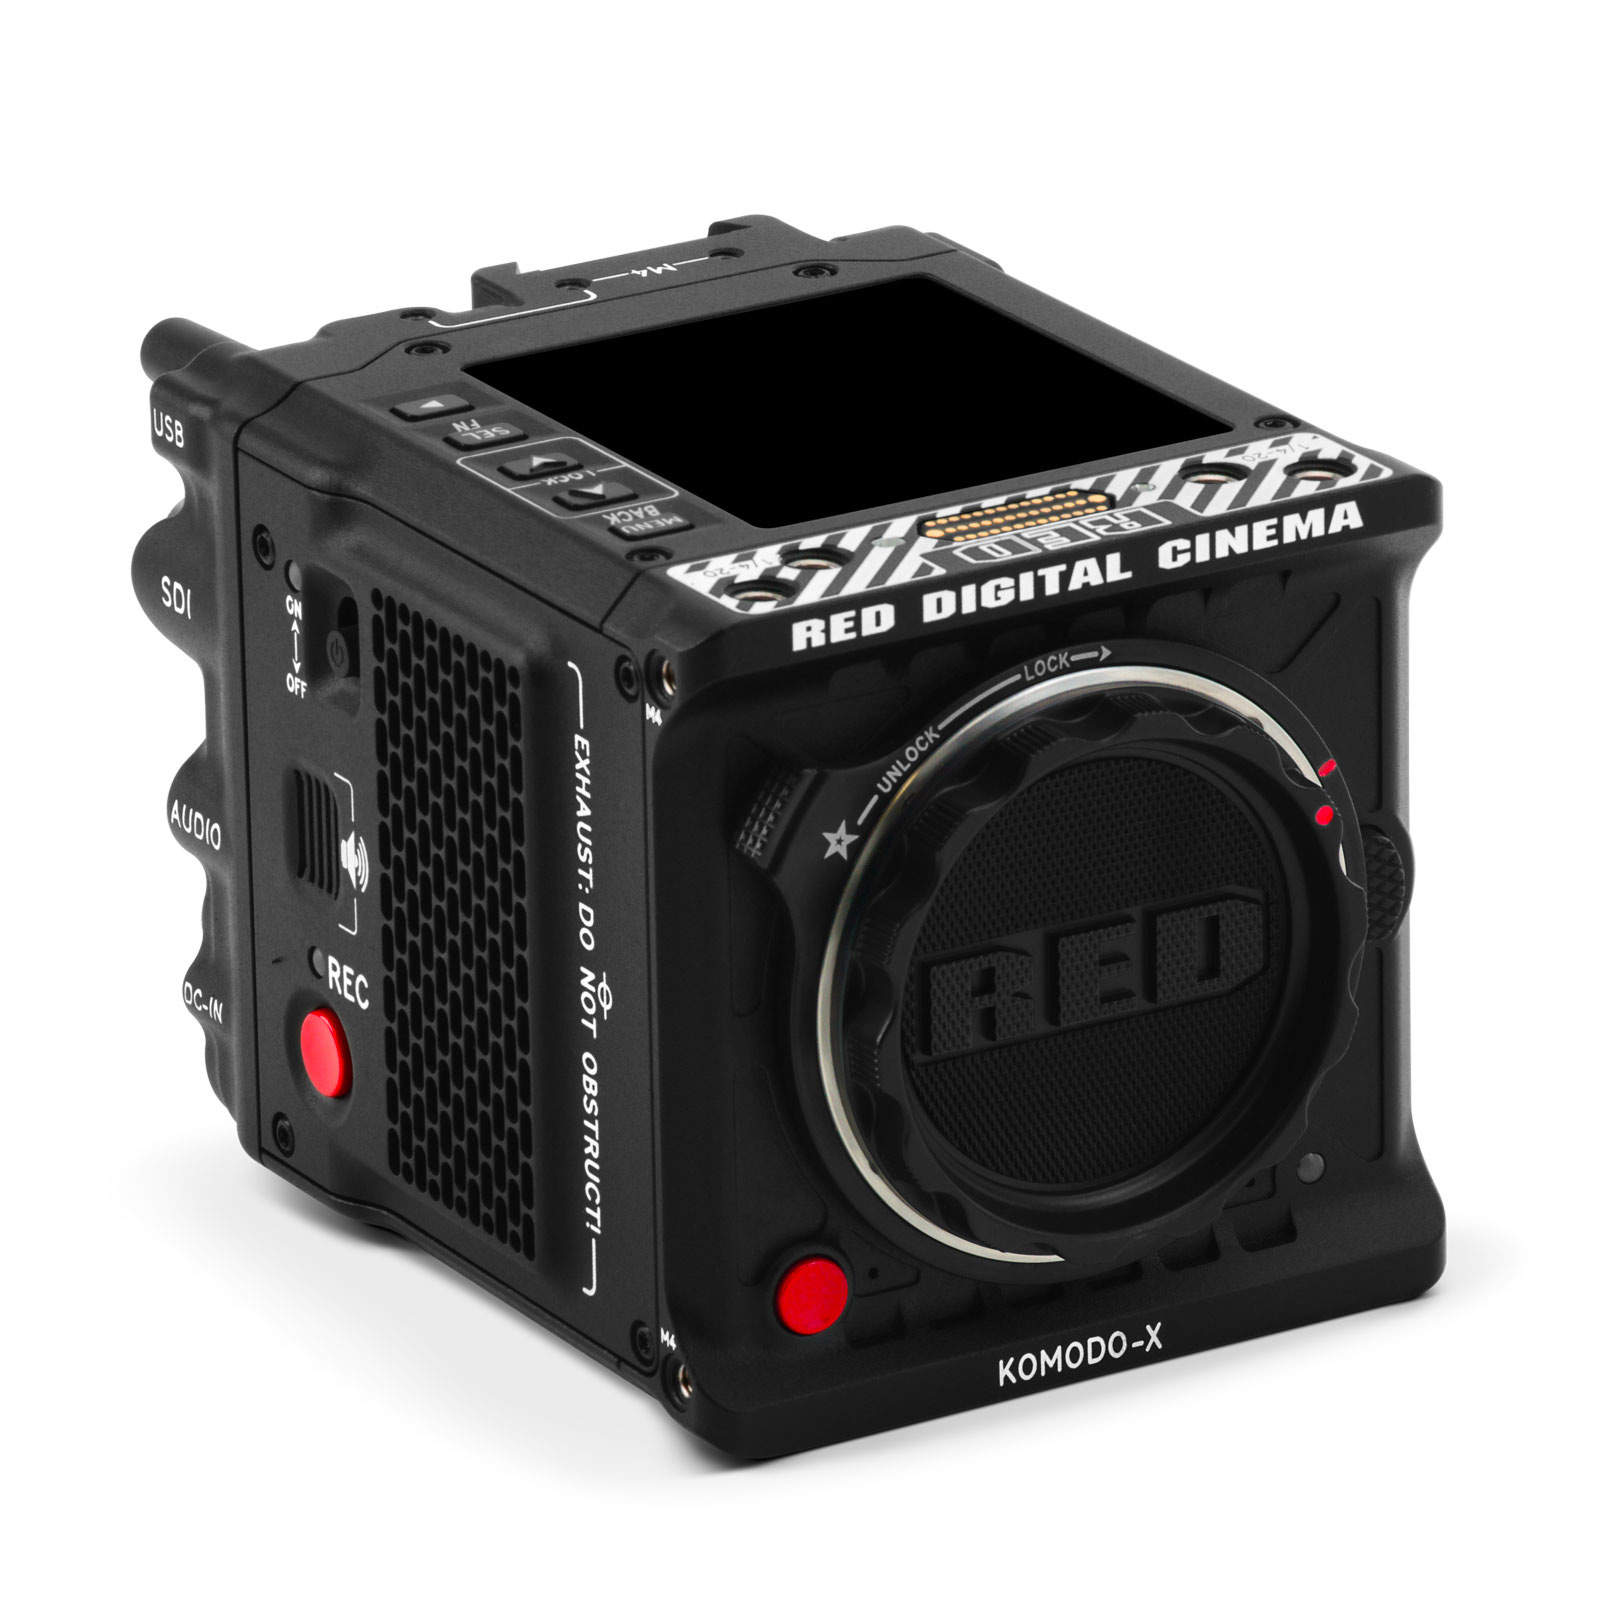 TRM annonce l'arrivée de la caméra RED Komodo-X